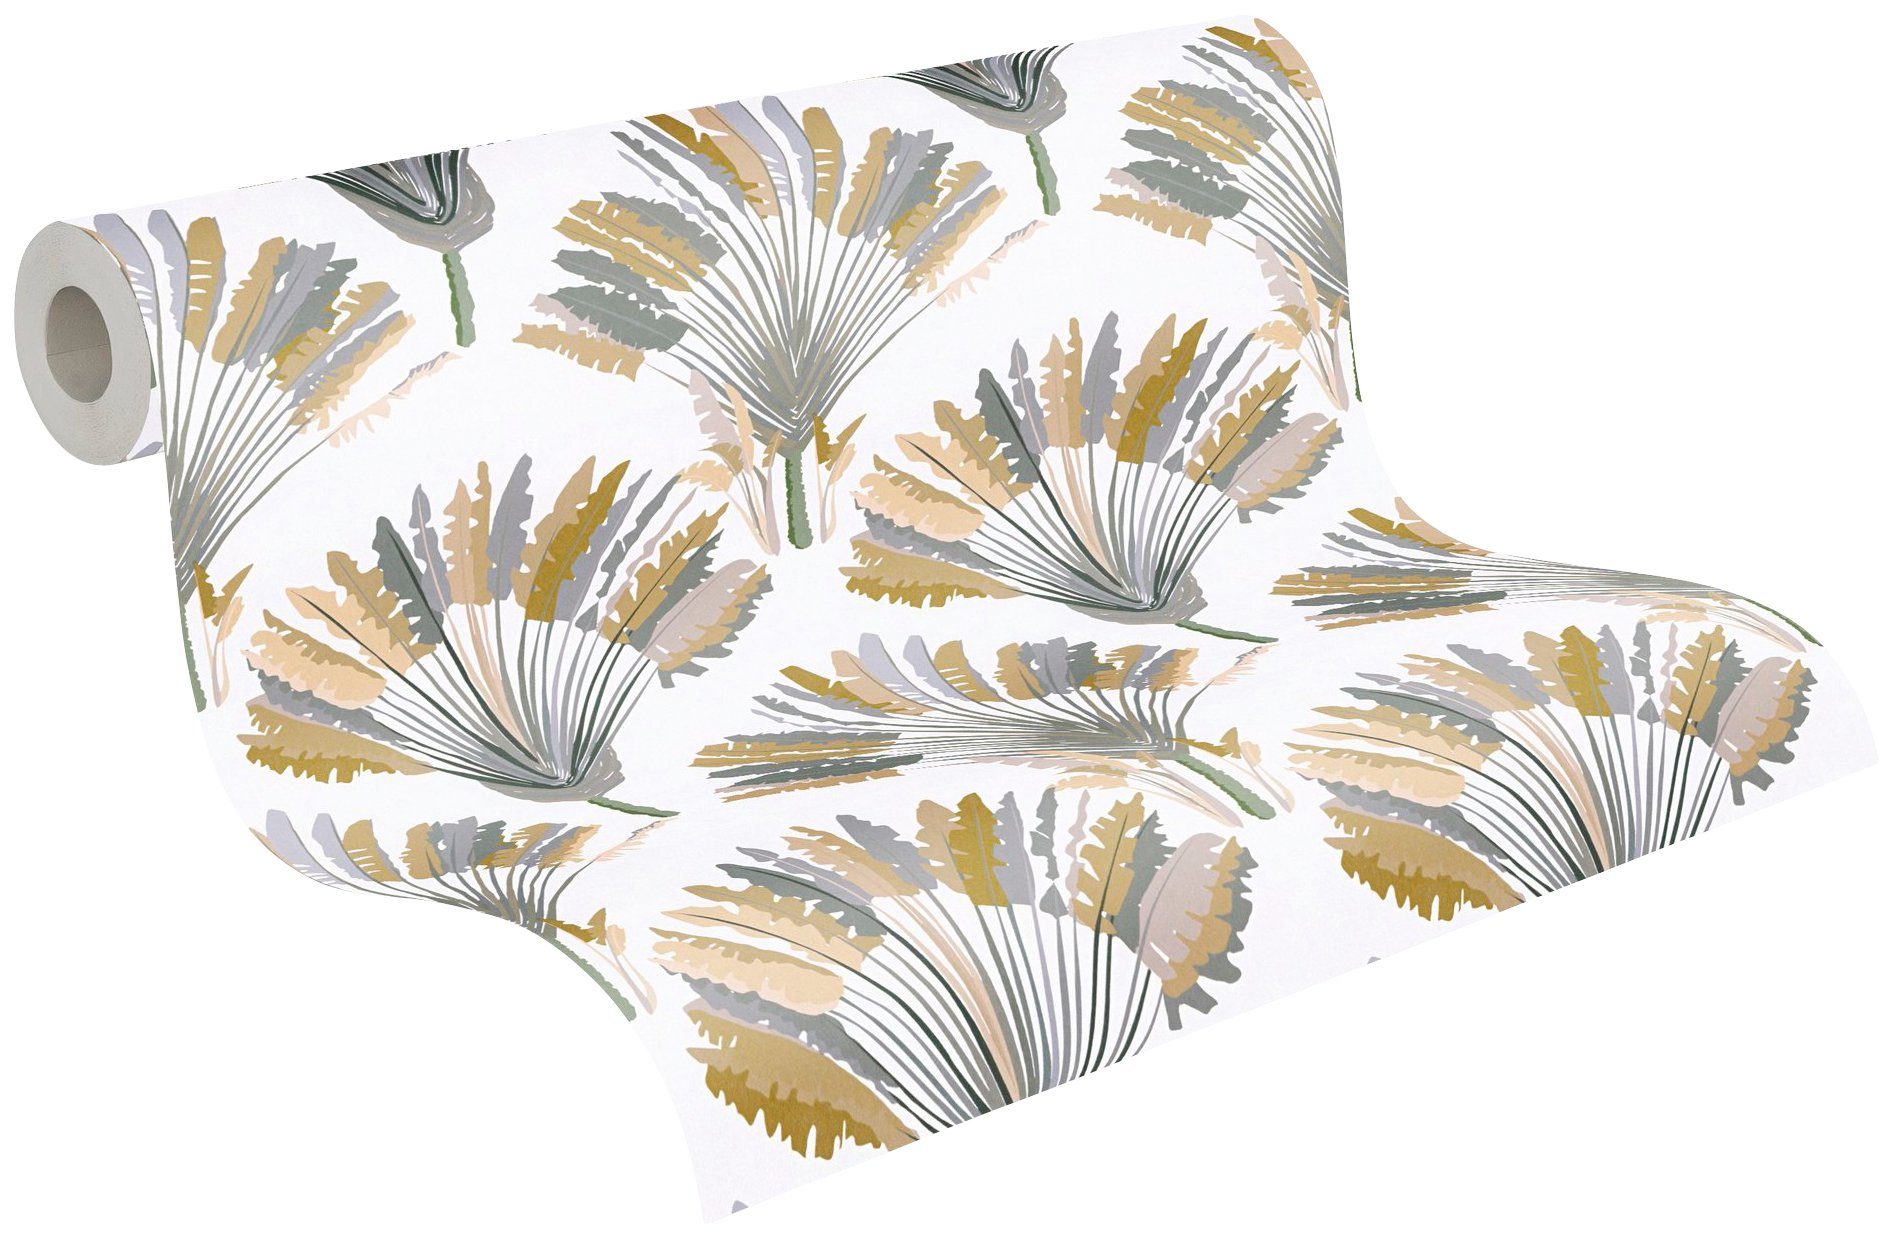 Chic, Jungle Tapete Federn gelb/grau/weiß Paper glatt, Dschungel Palmentapete Vliestapete botanisch, tropisch, Architects floral,